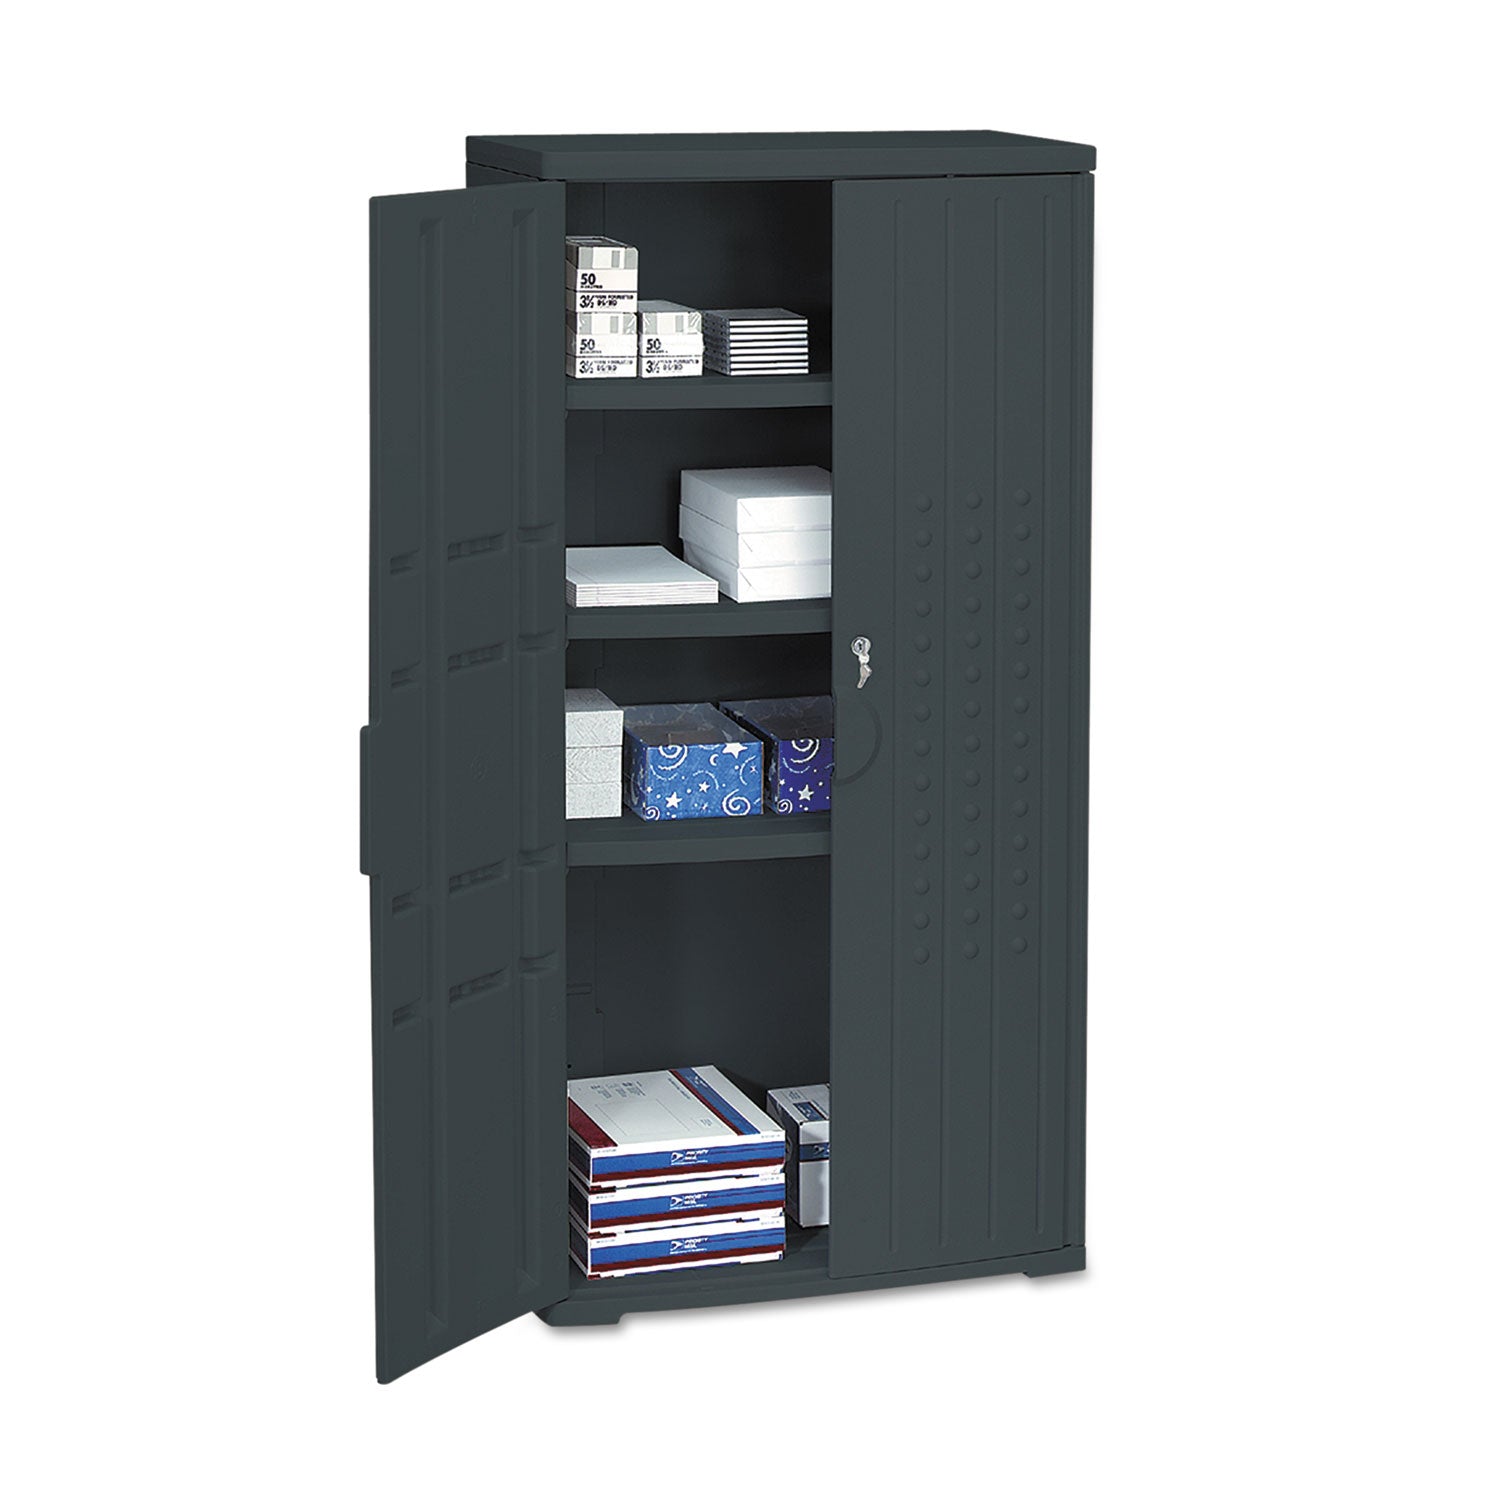 Rough n Ready Storage Cabinet, Three-Shelf, 33w x 18d x 66h, Black - 2